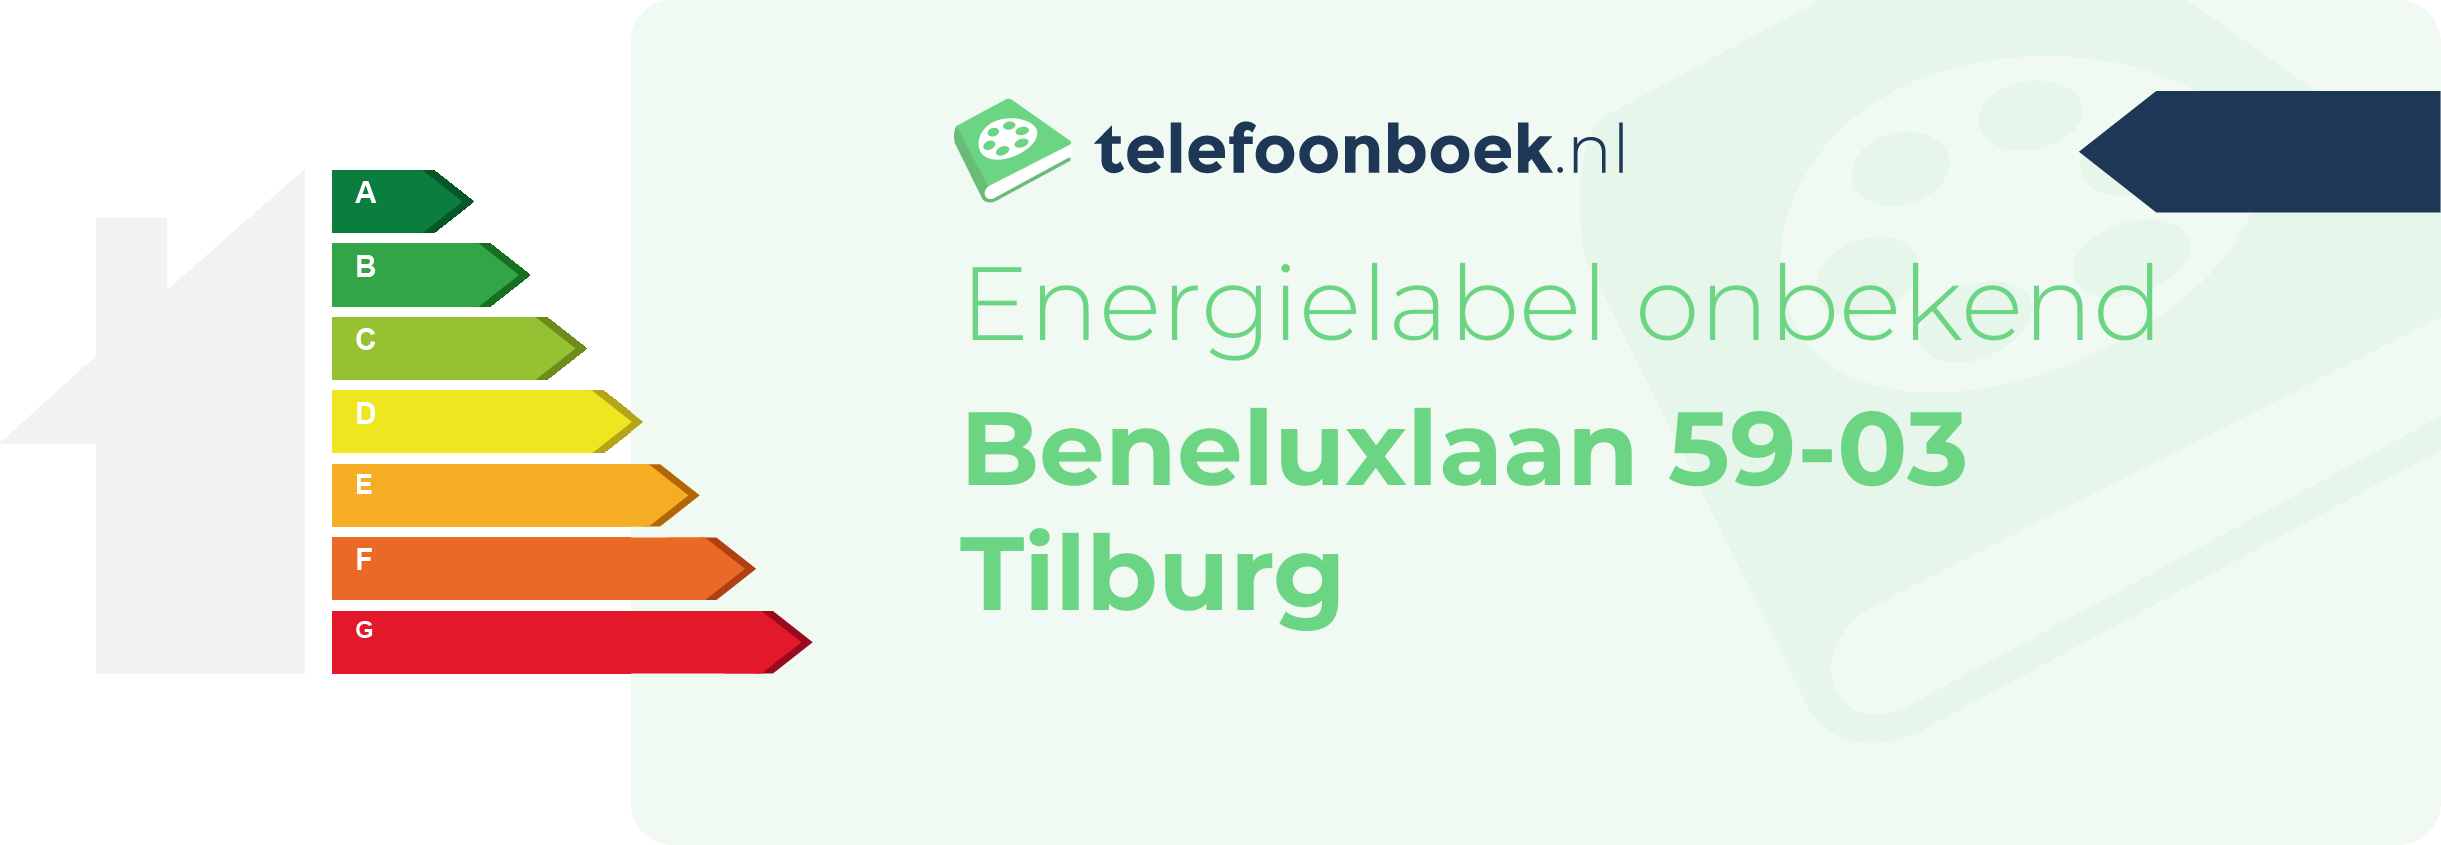 Energielabel Beneluxlaan 59-03 Tilburg